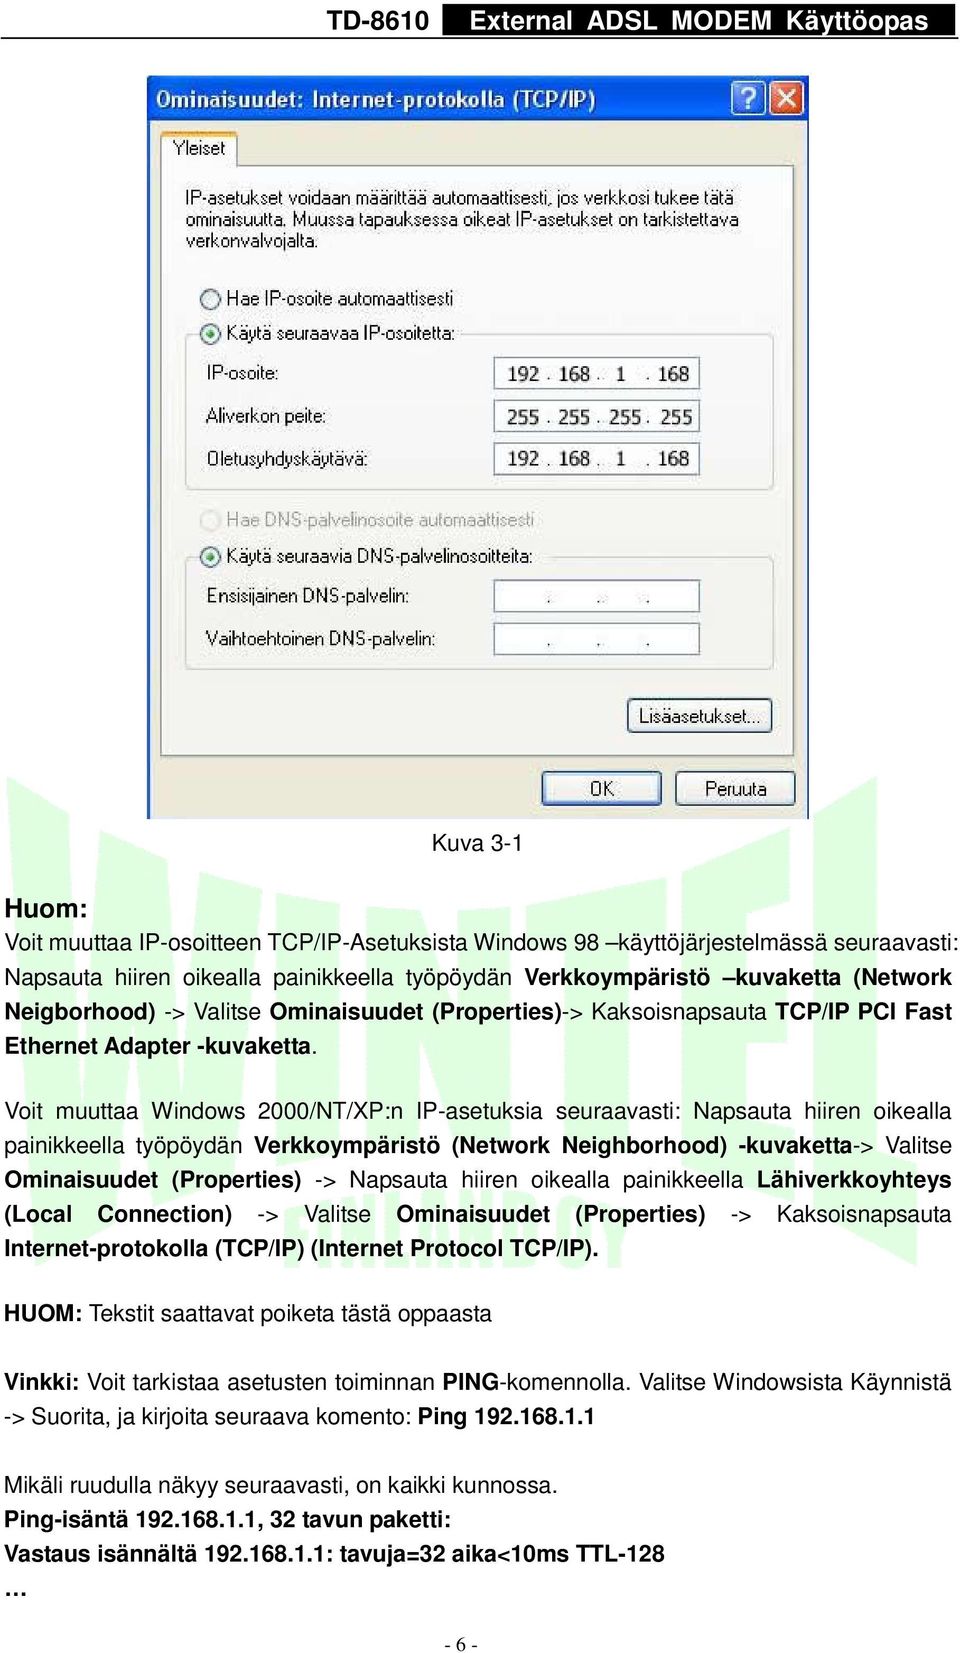 Voit muuttaa Windows 2000/NT/XP:n IP-asetuksia seuraavasti: Napsauta hiiren oikealla painikkeella työpöydän Verkkoympäristö (Network Neighborhood) -kuvaketta-> Valitse Ominaisuudet (Properties) ->